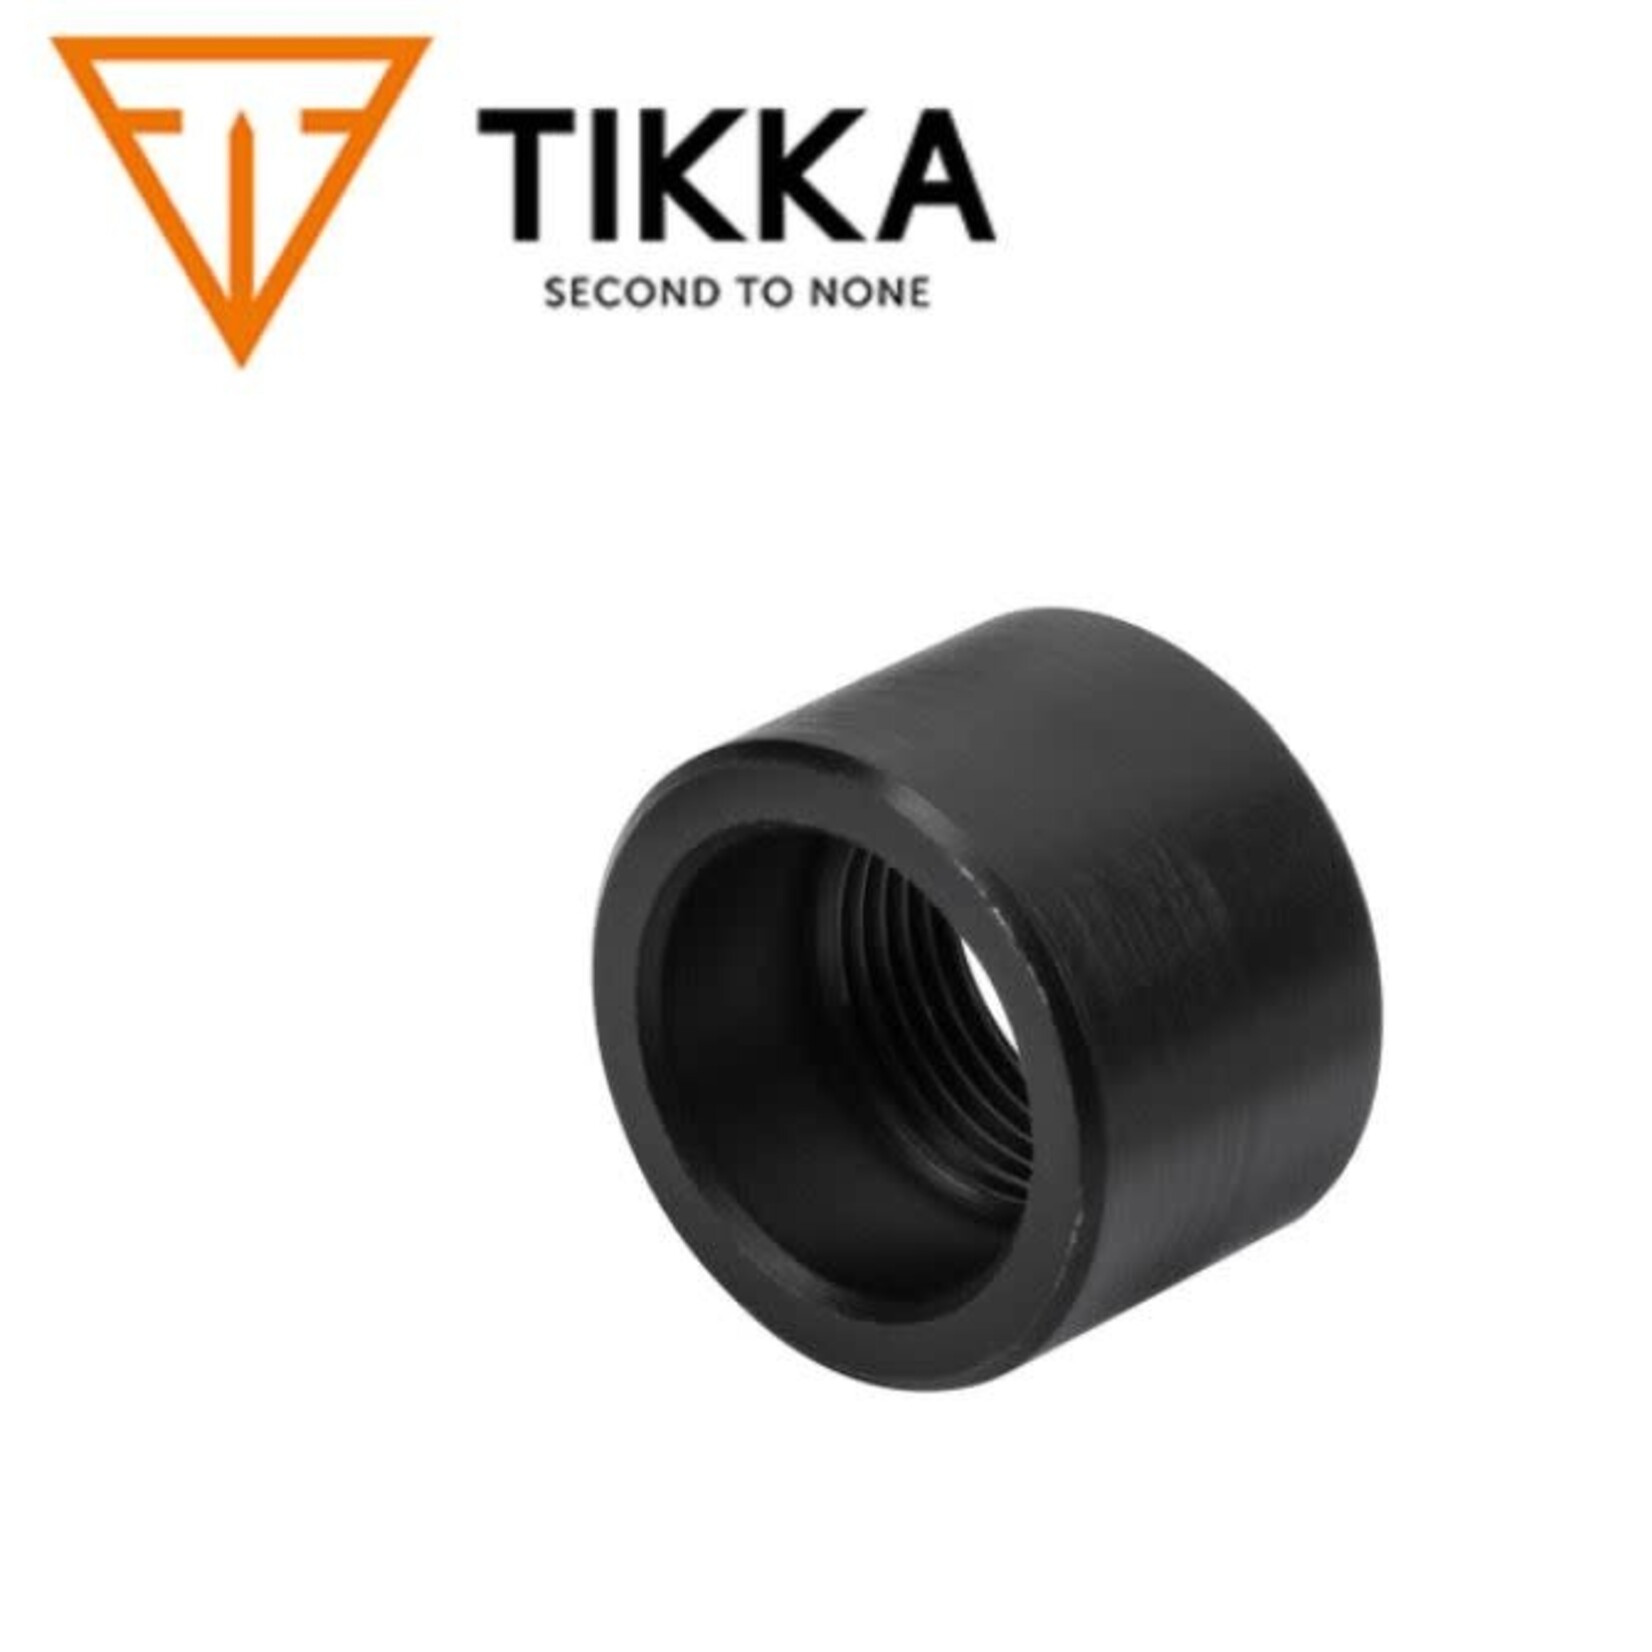 Tikka Tikka T1x Muzzle Cap 1/2-28 Thread